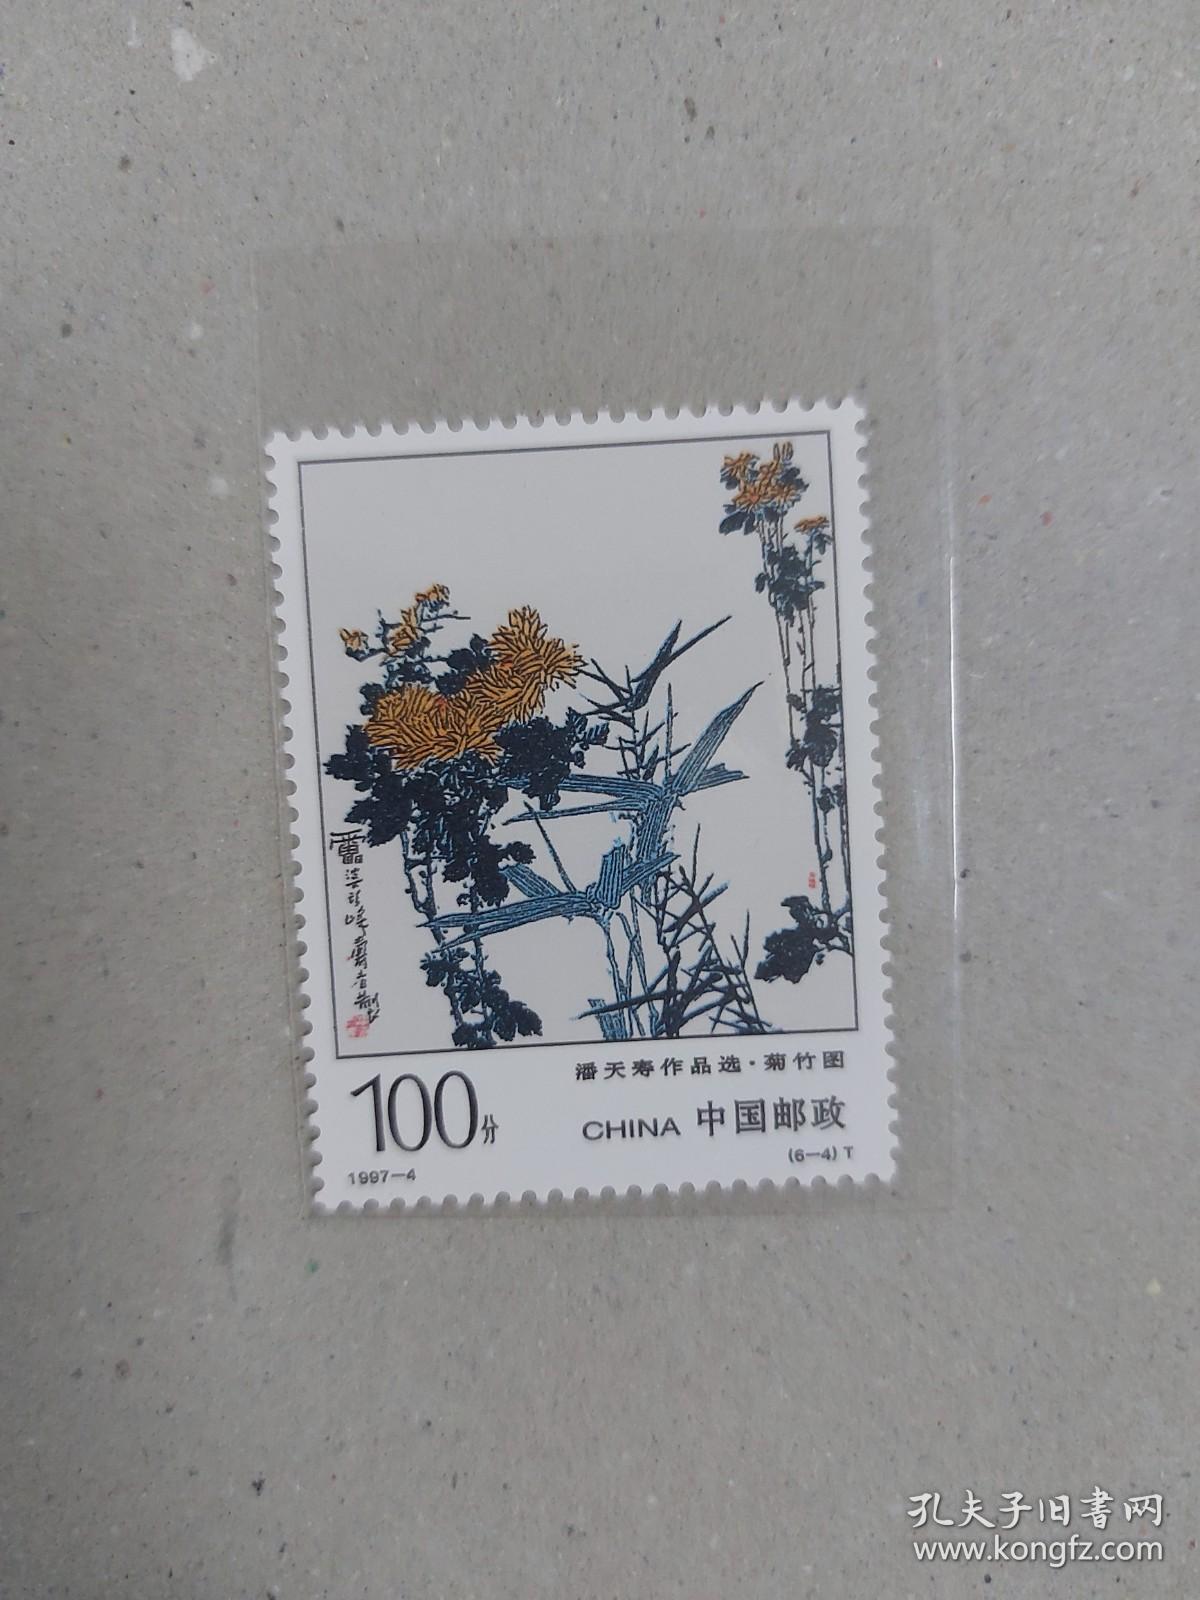 1997-4 （6-4）潘天寿作品选